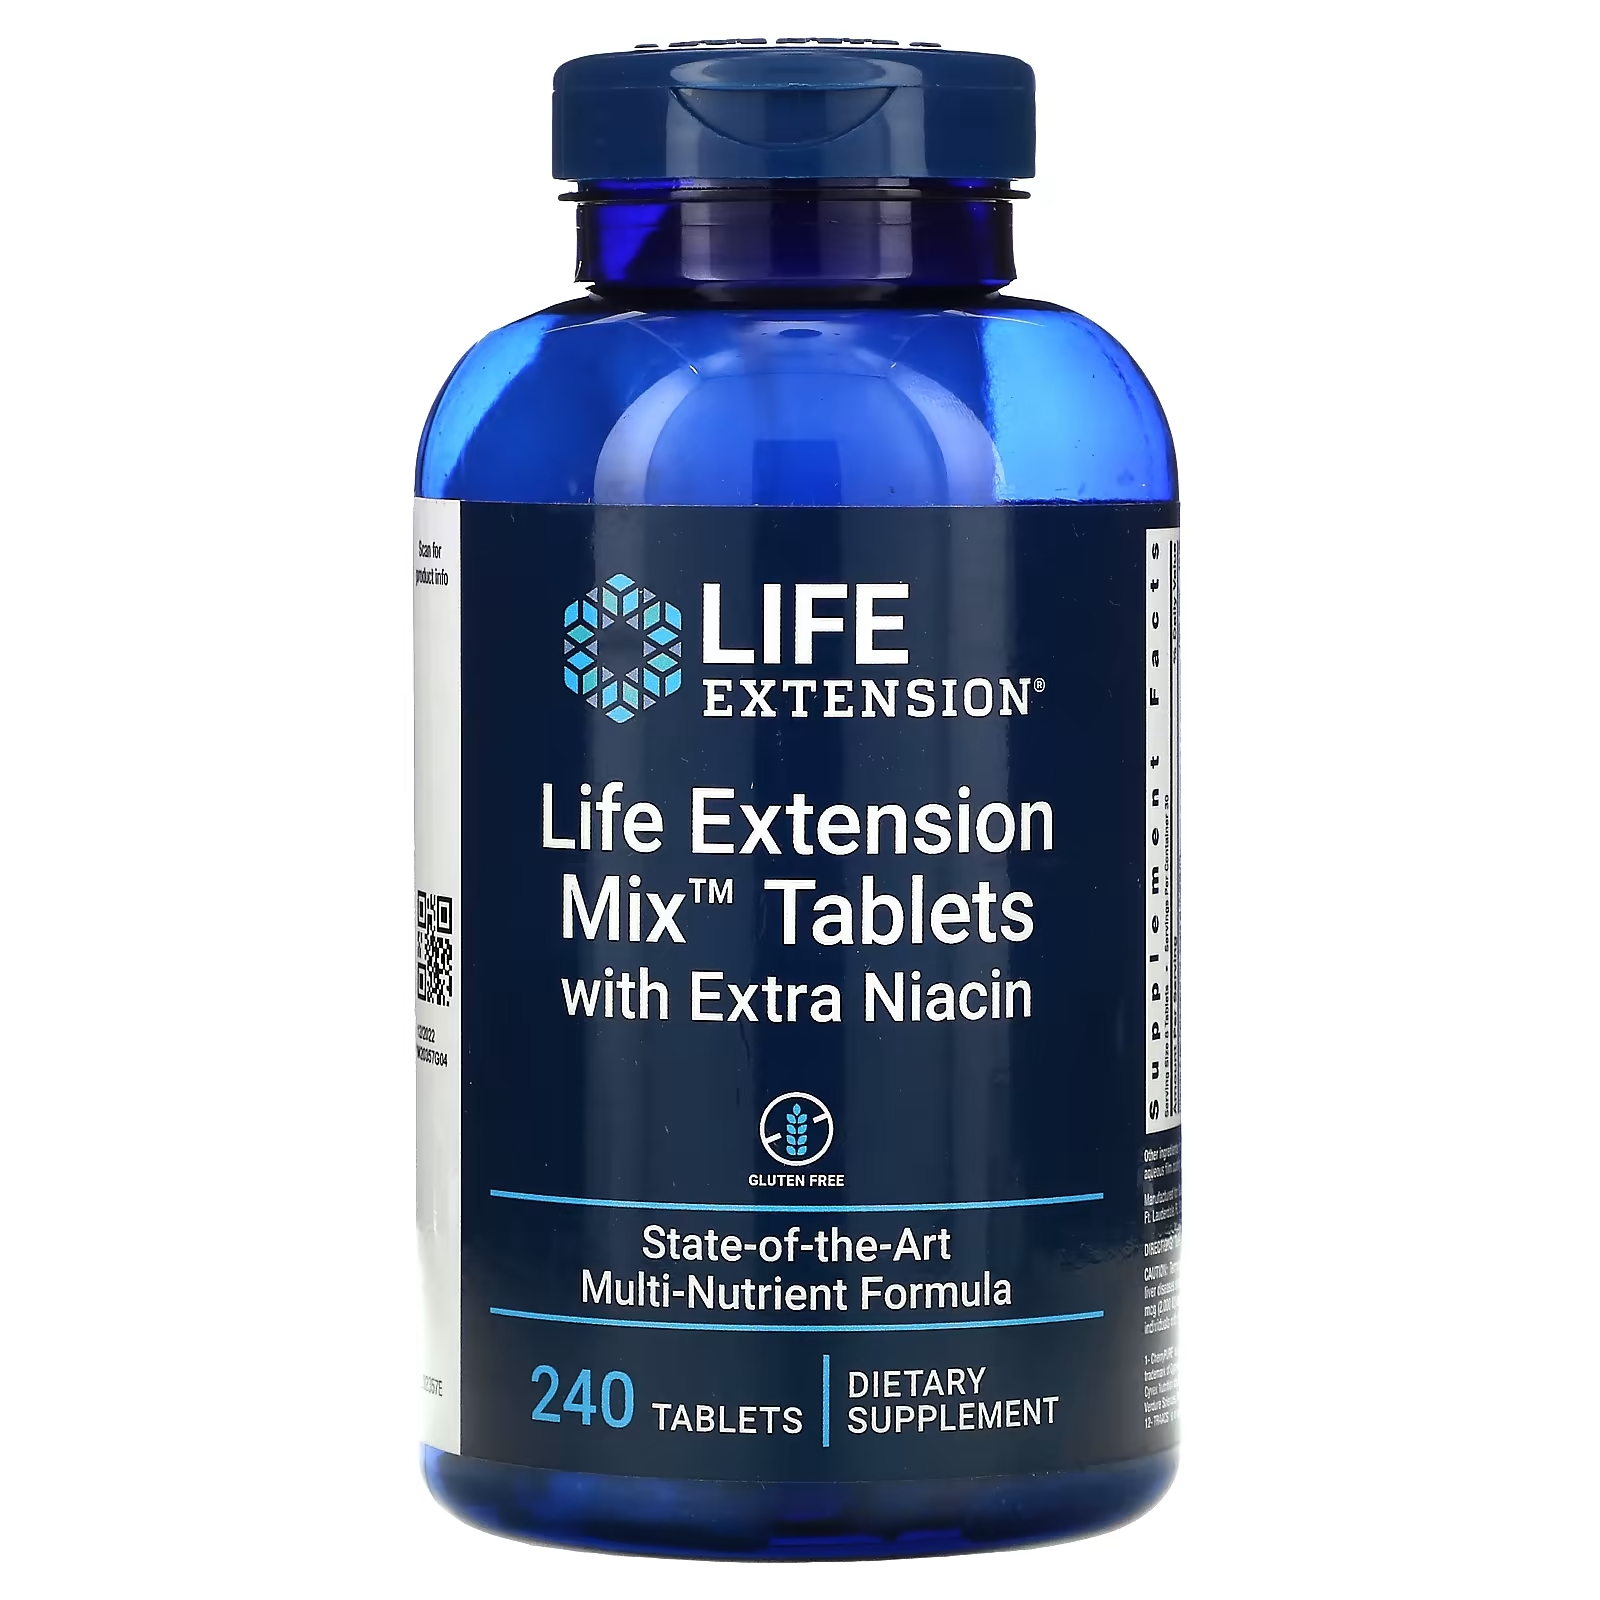 life extension комплекс таблеток без меди 240 таблеток Таблетки с Дополнительным Ниацином Life Extension Mix, 240 таблеток